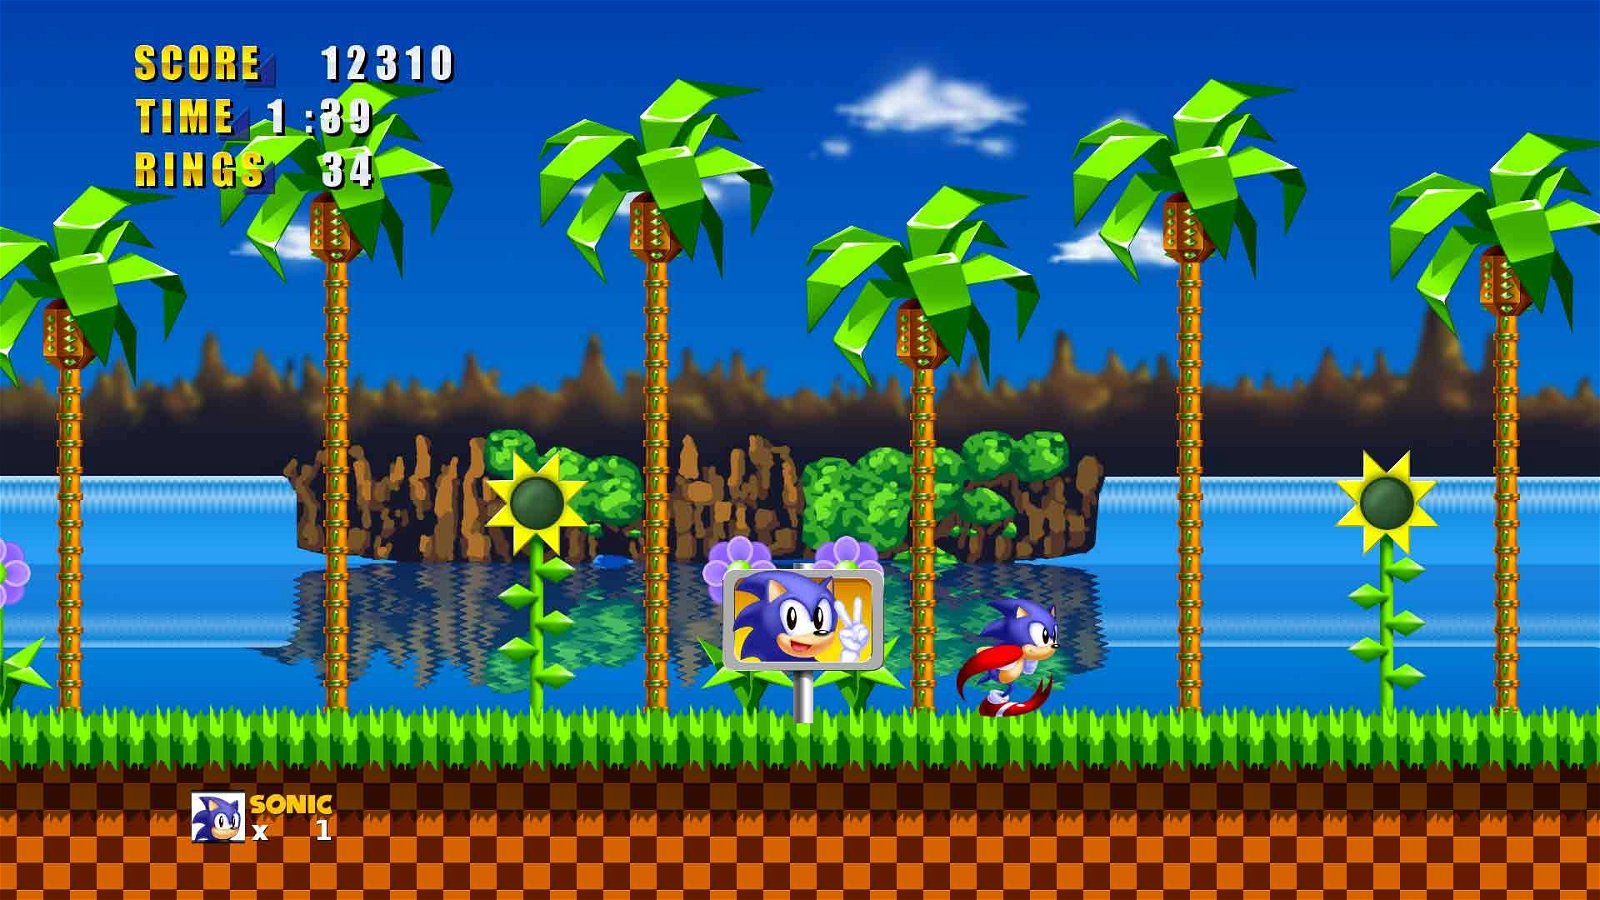 Immagine di Sonic The Hedgehog 2 Gratis su Steam, ecco il link